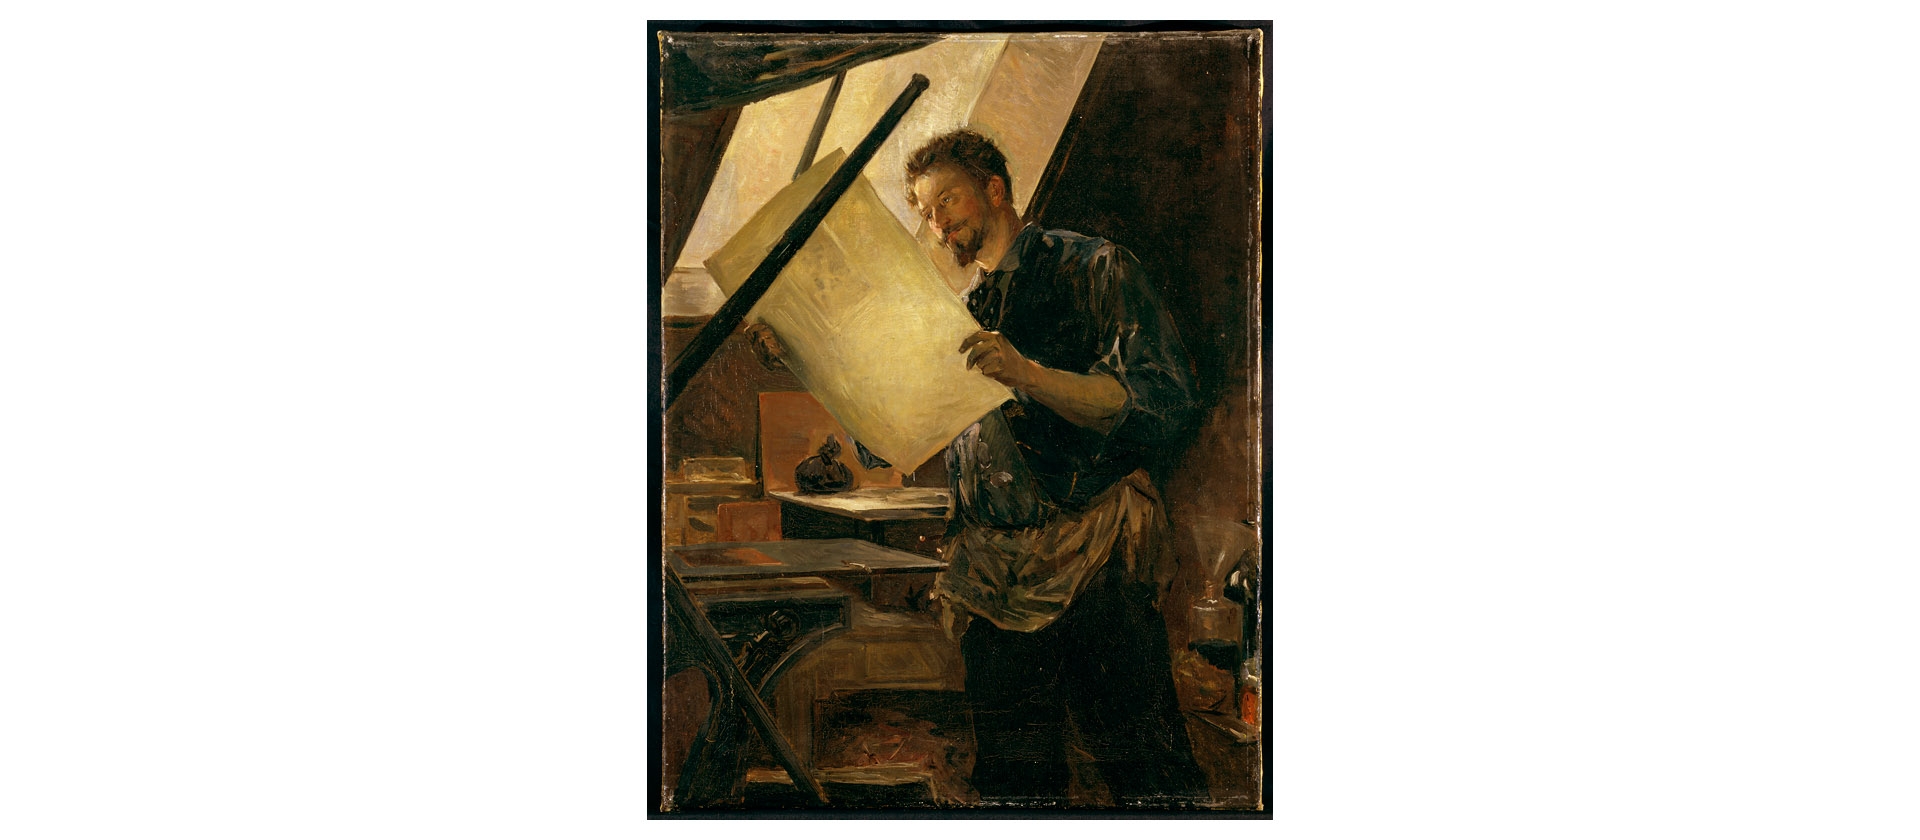  Paul Mathey, Félicien Rops an der Druckerpresse in seinem Atelier, um 1888, Öl auf Leinwand, 65 x 50 cm  Katrin Bellinger Collection © Katrin Bellinger Collection